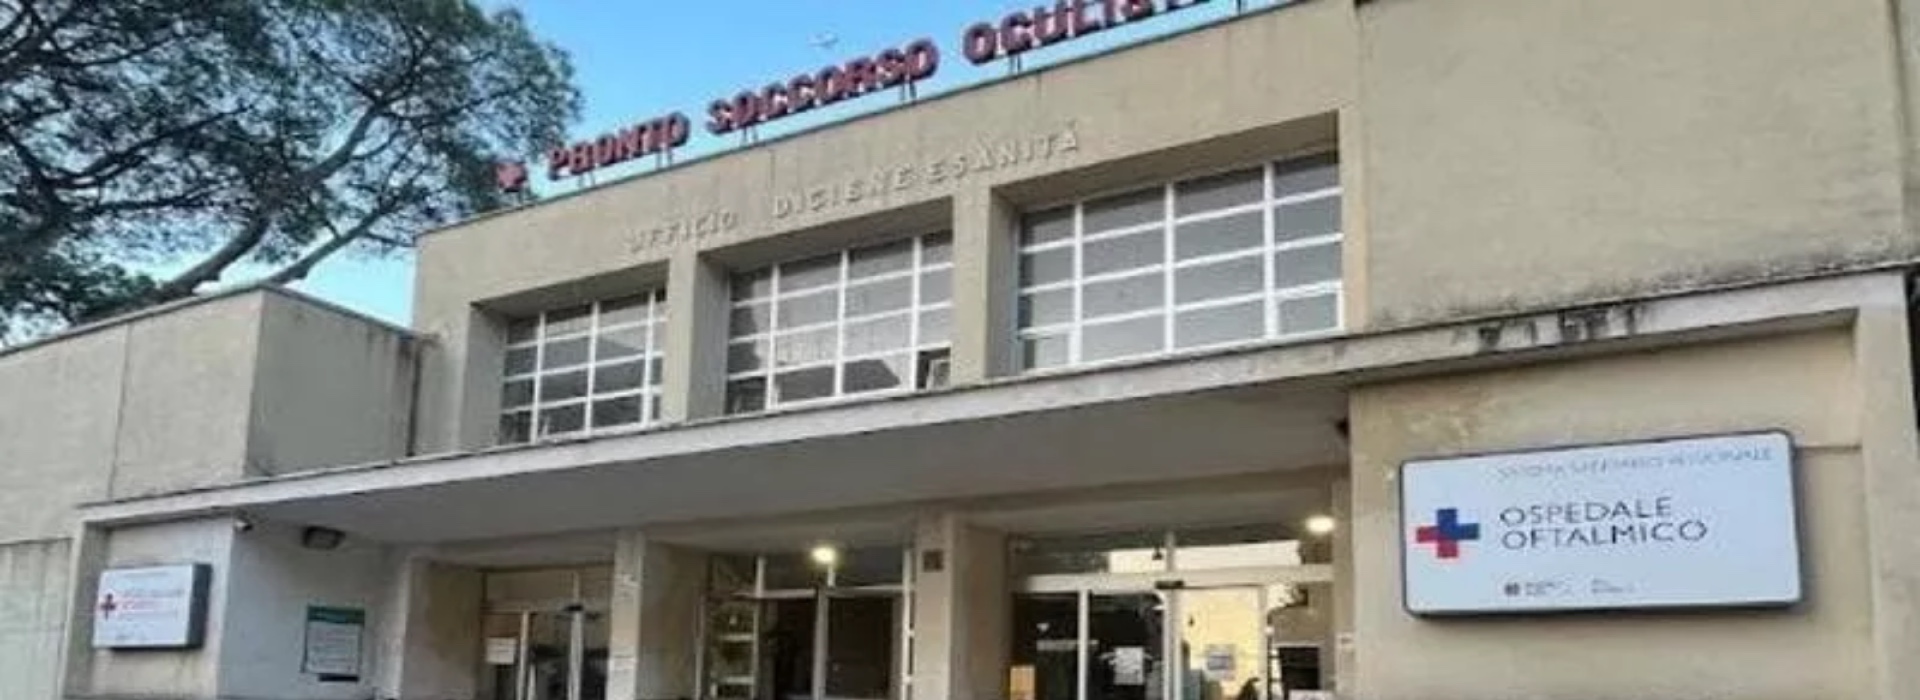 Scandalo all'Ospedale Oftalmico di Roma: il primario al convegno, Sale operatorie chiuse e indagini della procura